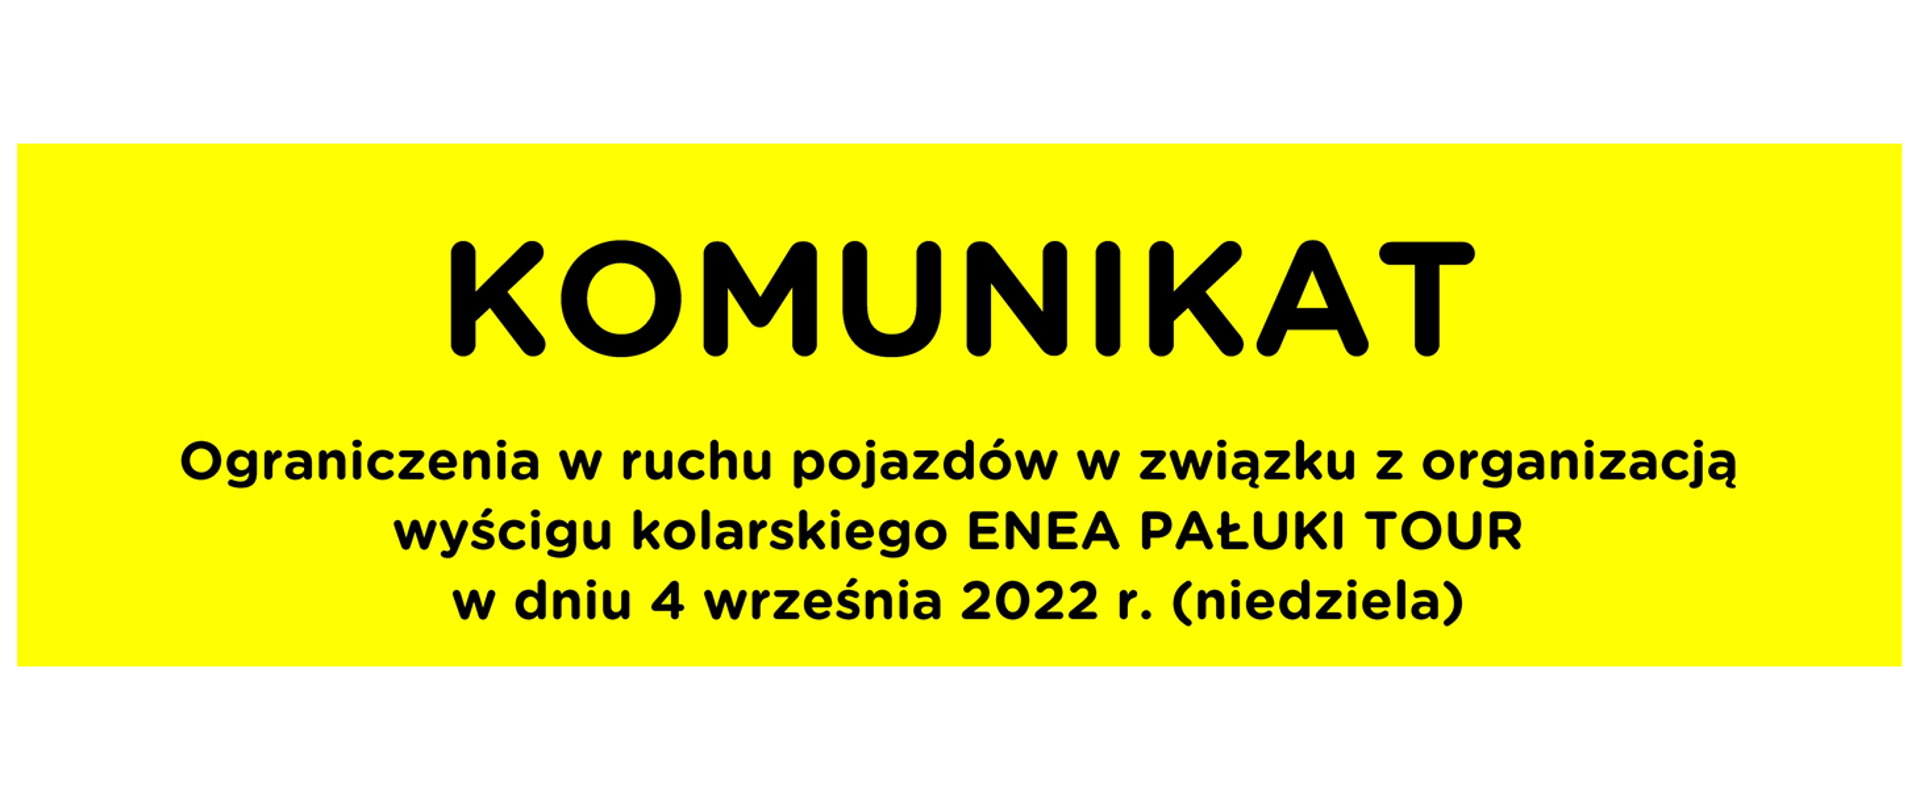 W związku z organizacją w dniu 4 września 2022 r. Ogólnopolskiego Wyścigu Kolarskiego Enea Pałuki Tour na terenie powiatu żnińskiego planowane są utrudnienia w ruchu pojazdów.